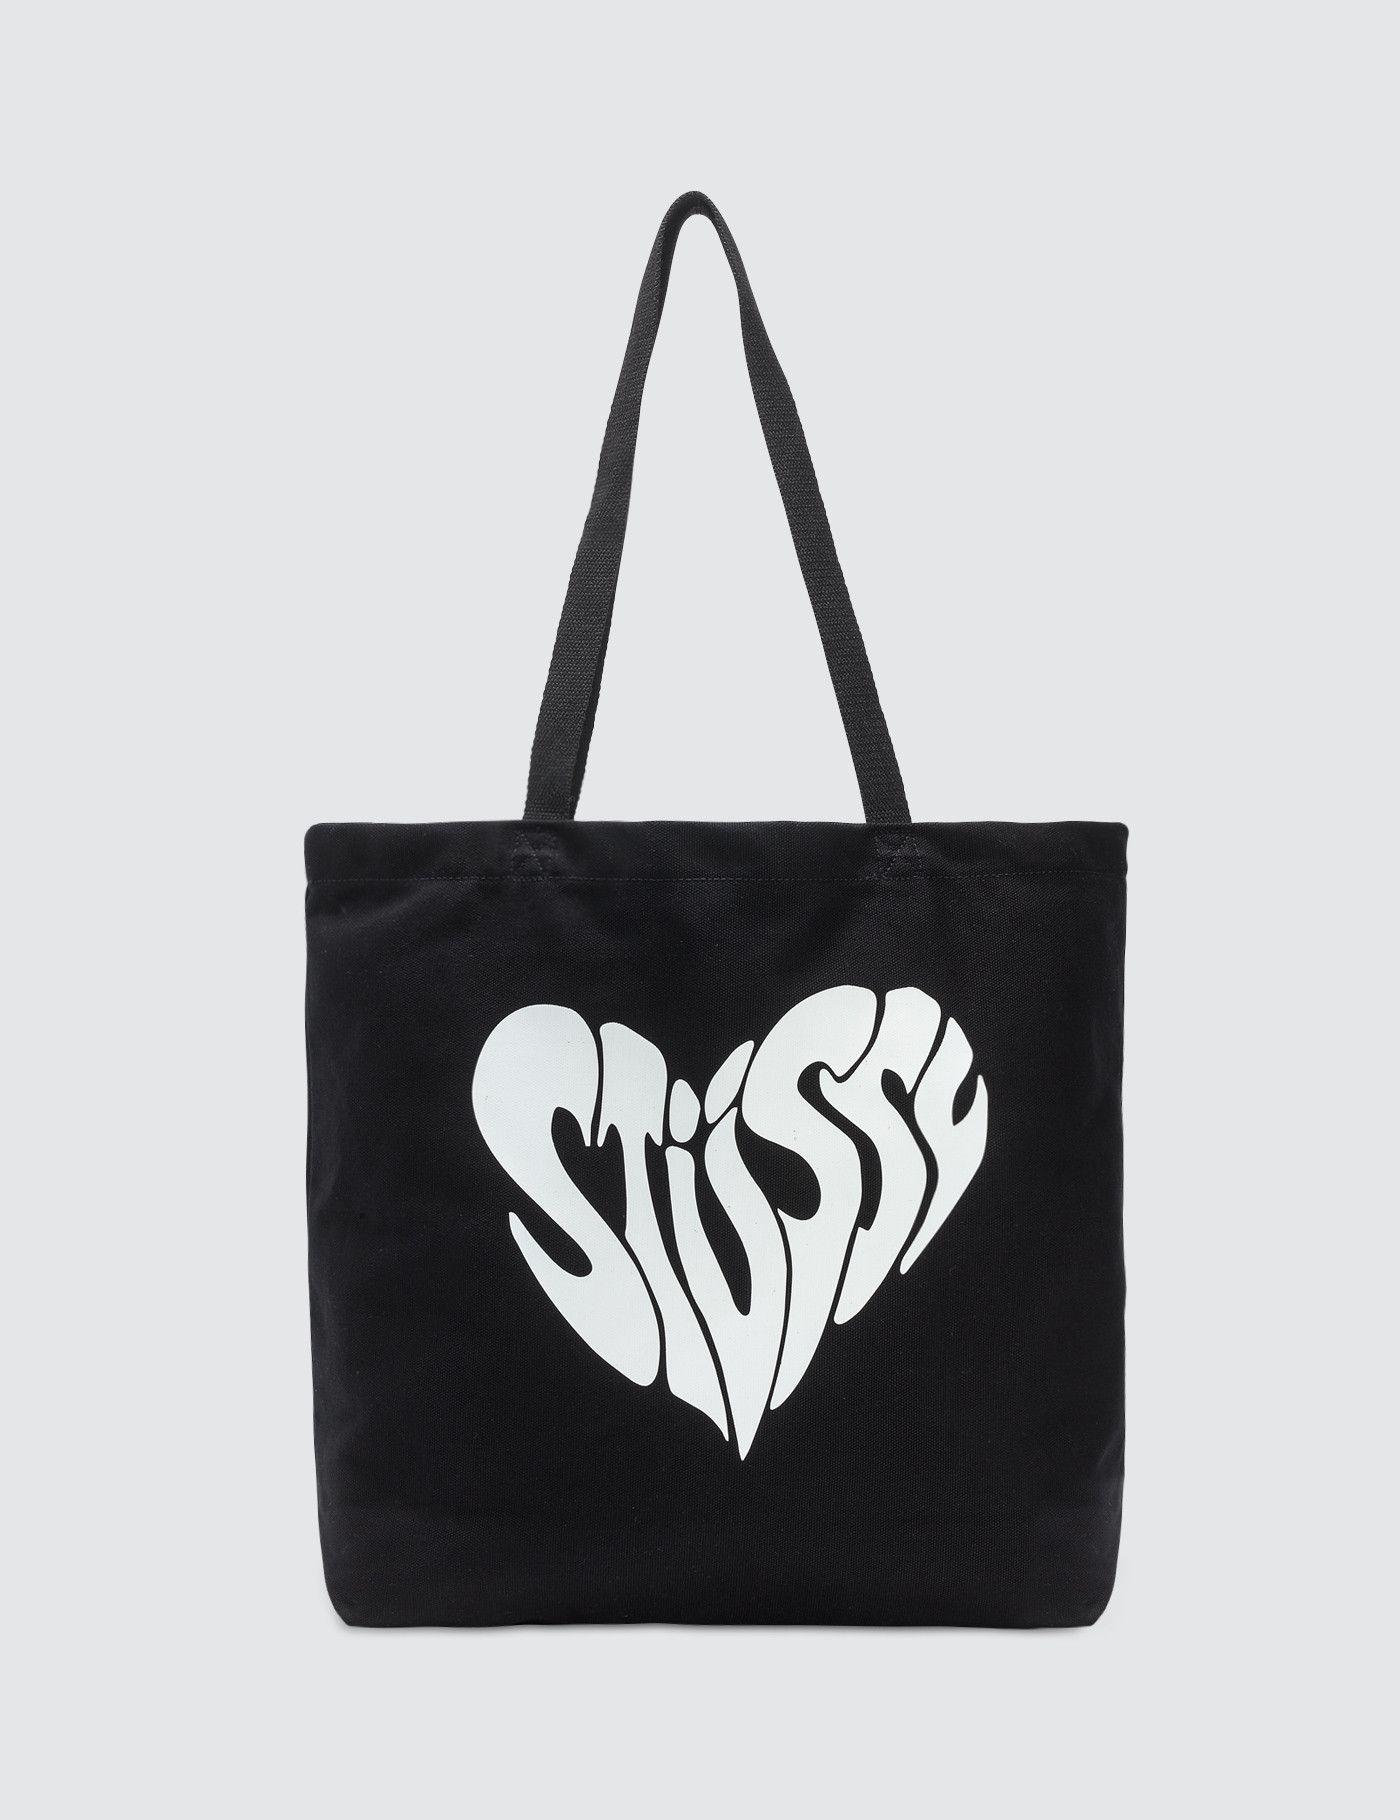 Stussy Original Logo - Buy Original Stussy Peace Tote Bag at Indonesia